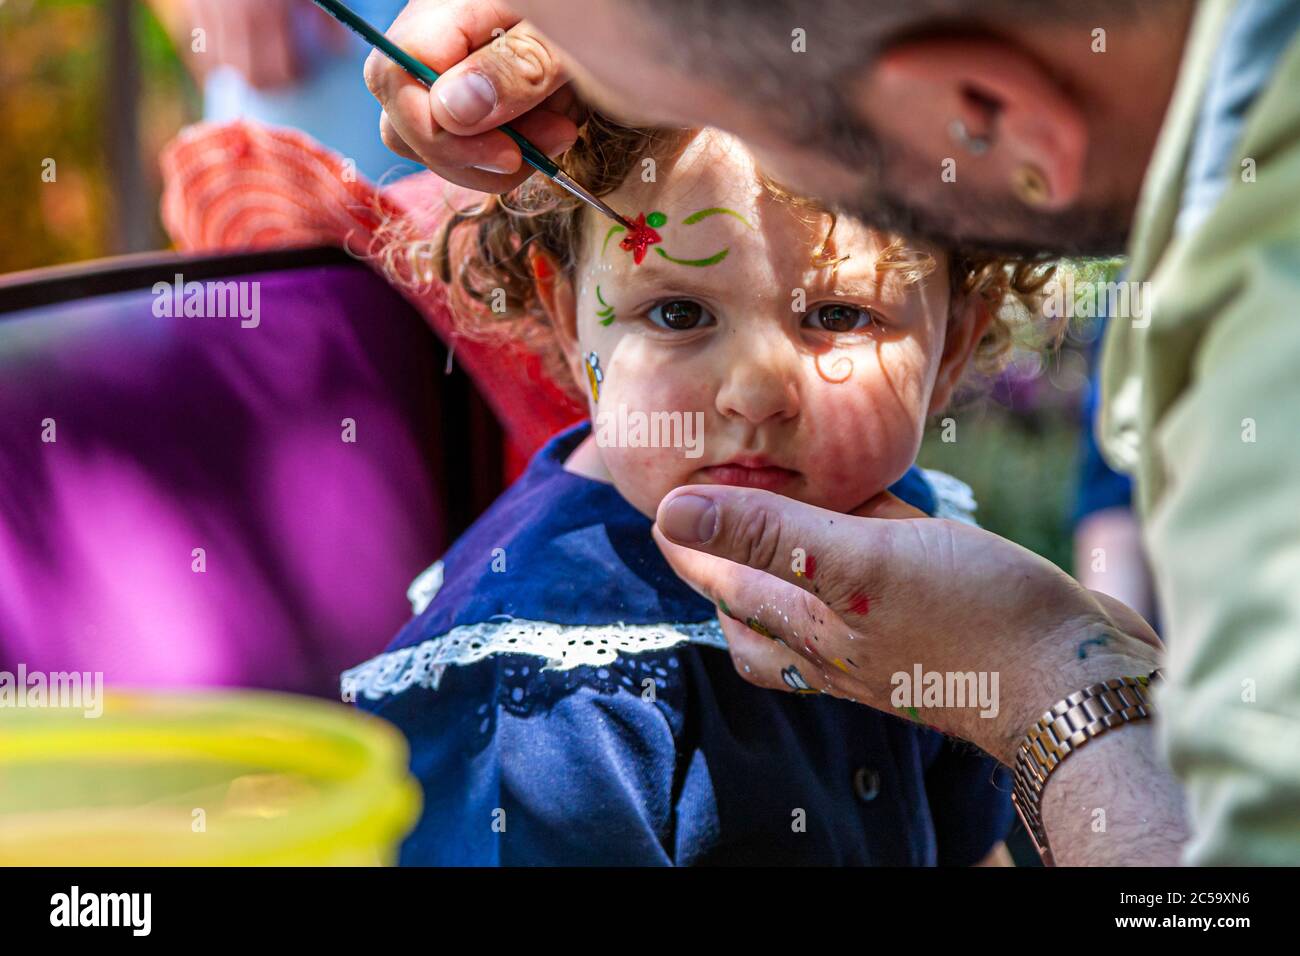 Una niña pequeña se pinta abejas en su cara. Los niños se enfrentan a la pintura en Grevenbroich, Alemania Foto de stock